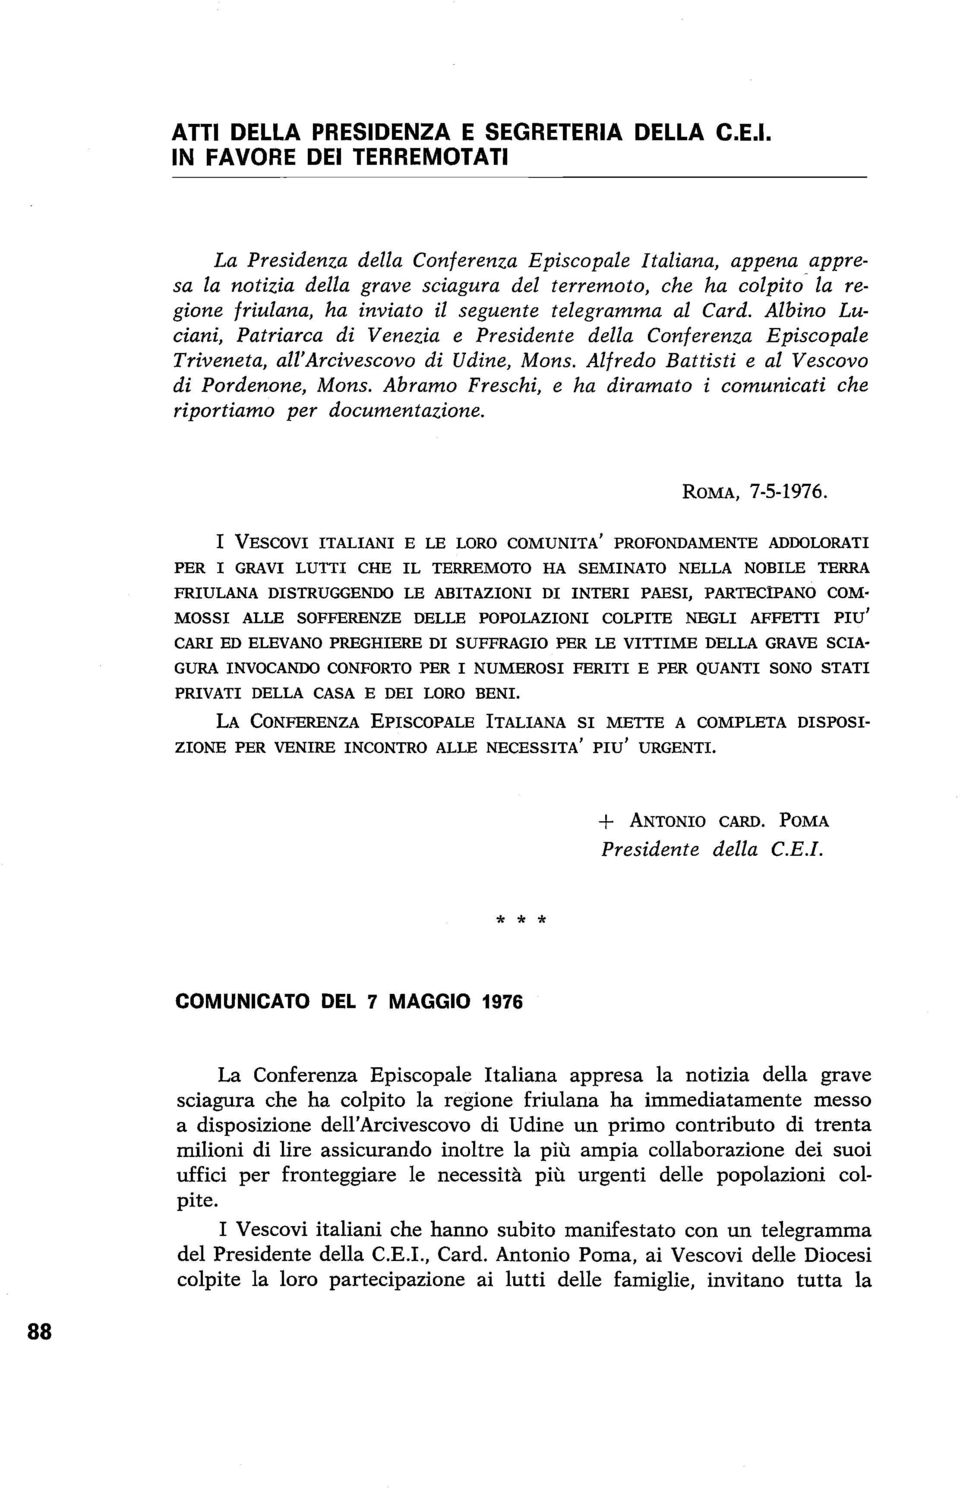 Alfredo Battisti e al Vescovo di Pordenone, Mons. Abramo Freschi, e ha diramato i comunicati che riportiamo per documentazione. ROMA, 7-5-1976.